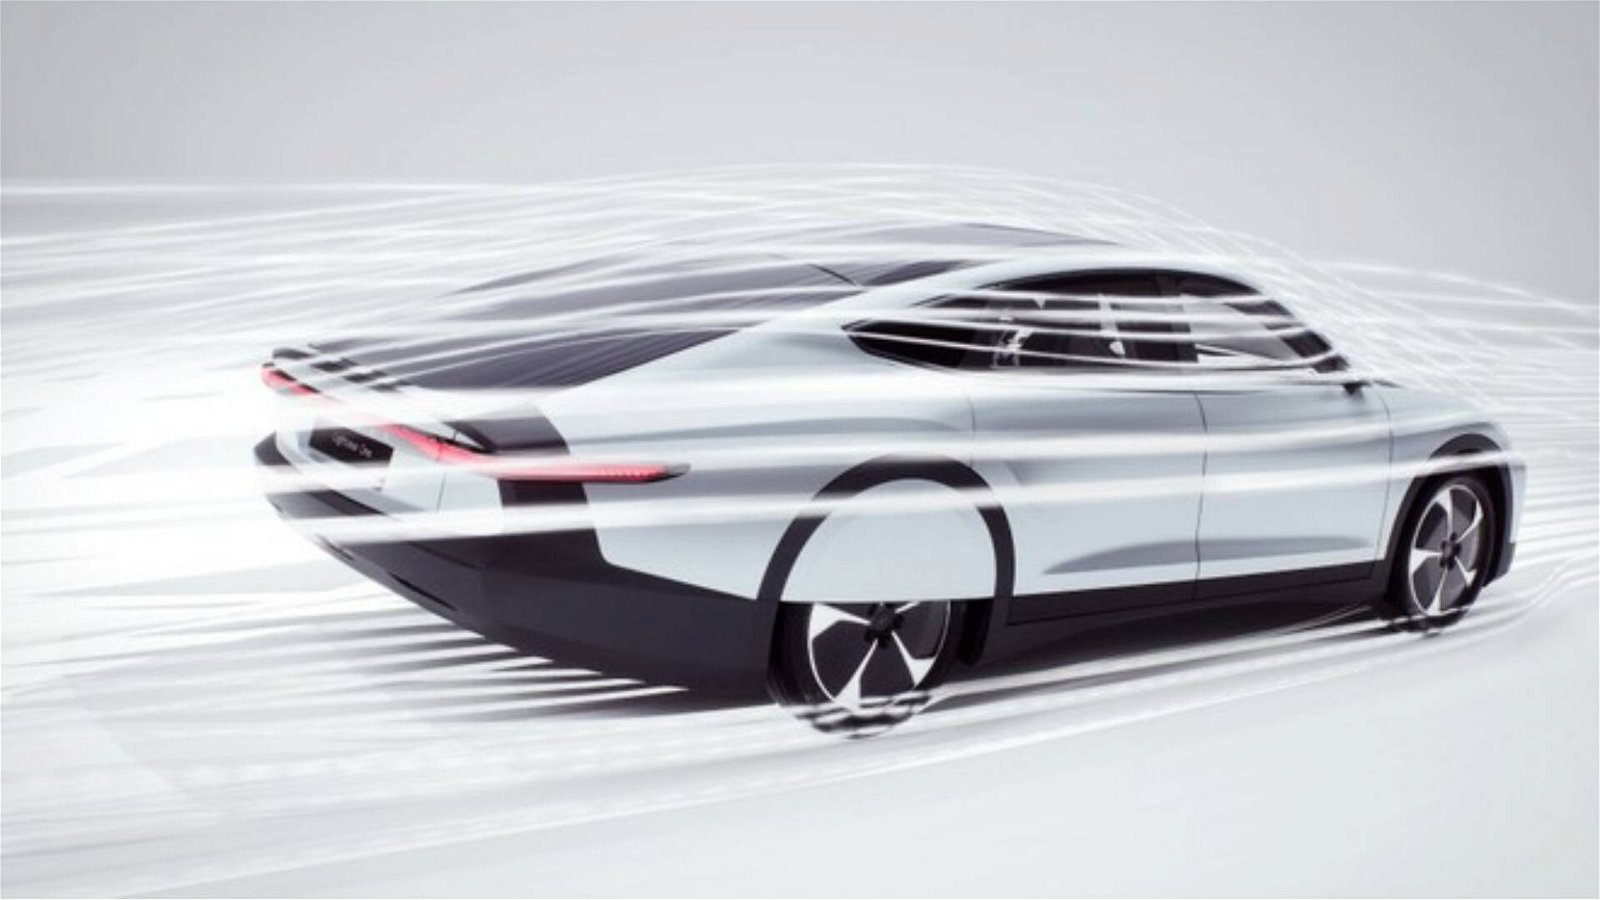 Immagine di Lightyear One, la prima auto solare debutterà entro il 2021